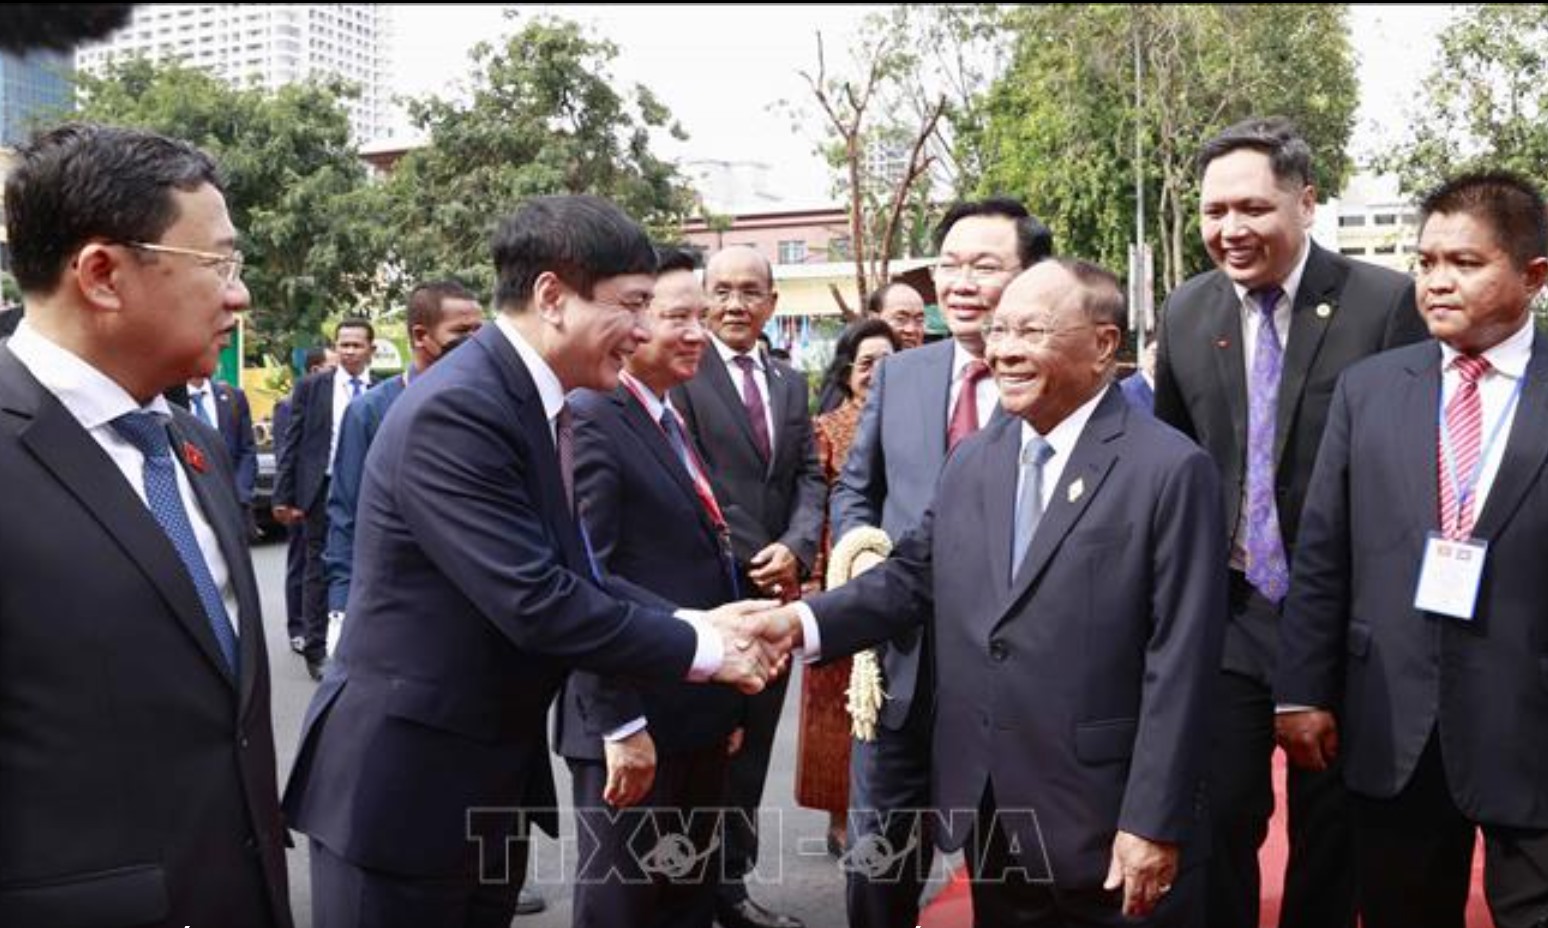 Chủ tịch Quốc hội Vương Đình Huệ giới thiệu với Chủ tịch Quốc hội Campuchia các đại biểu Việt Nam. Ảnh: TTXVN